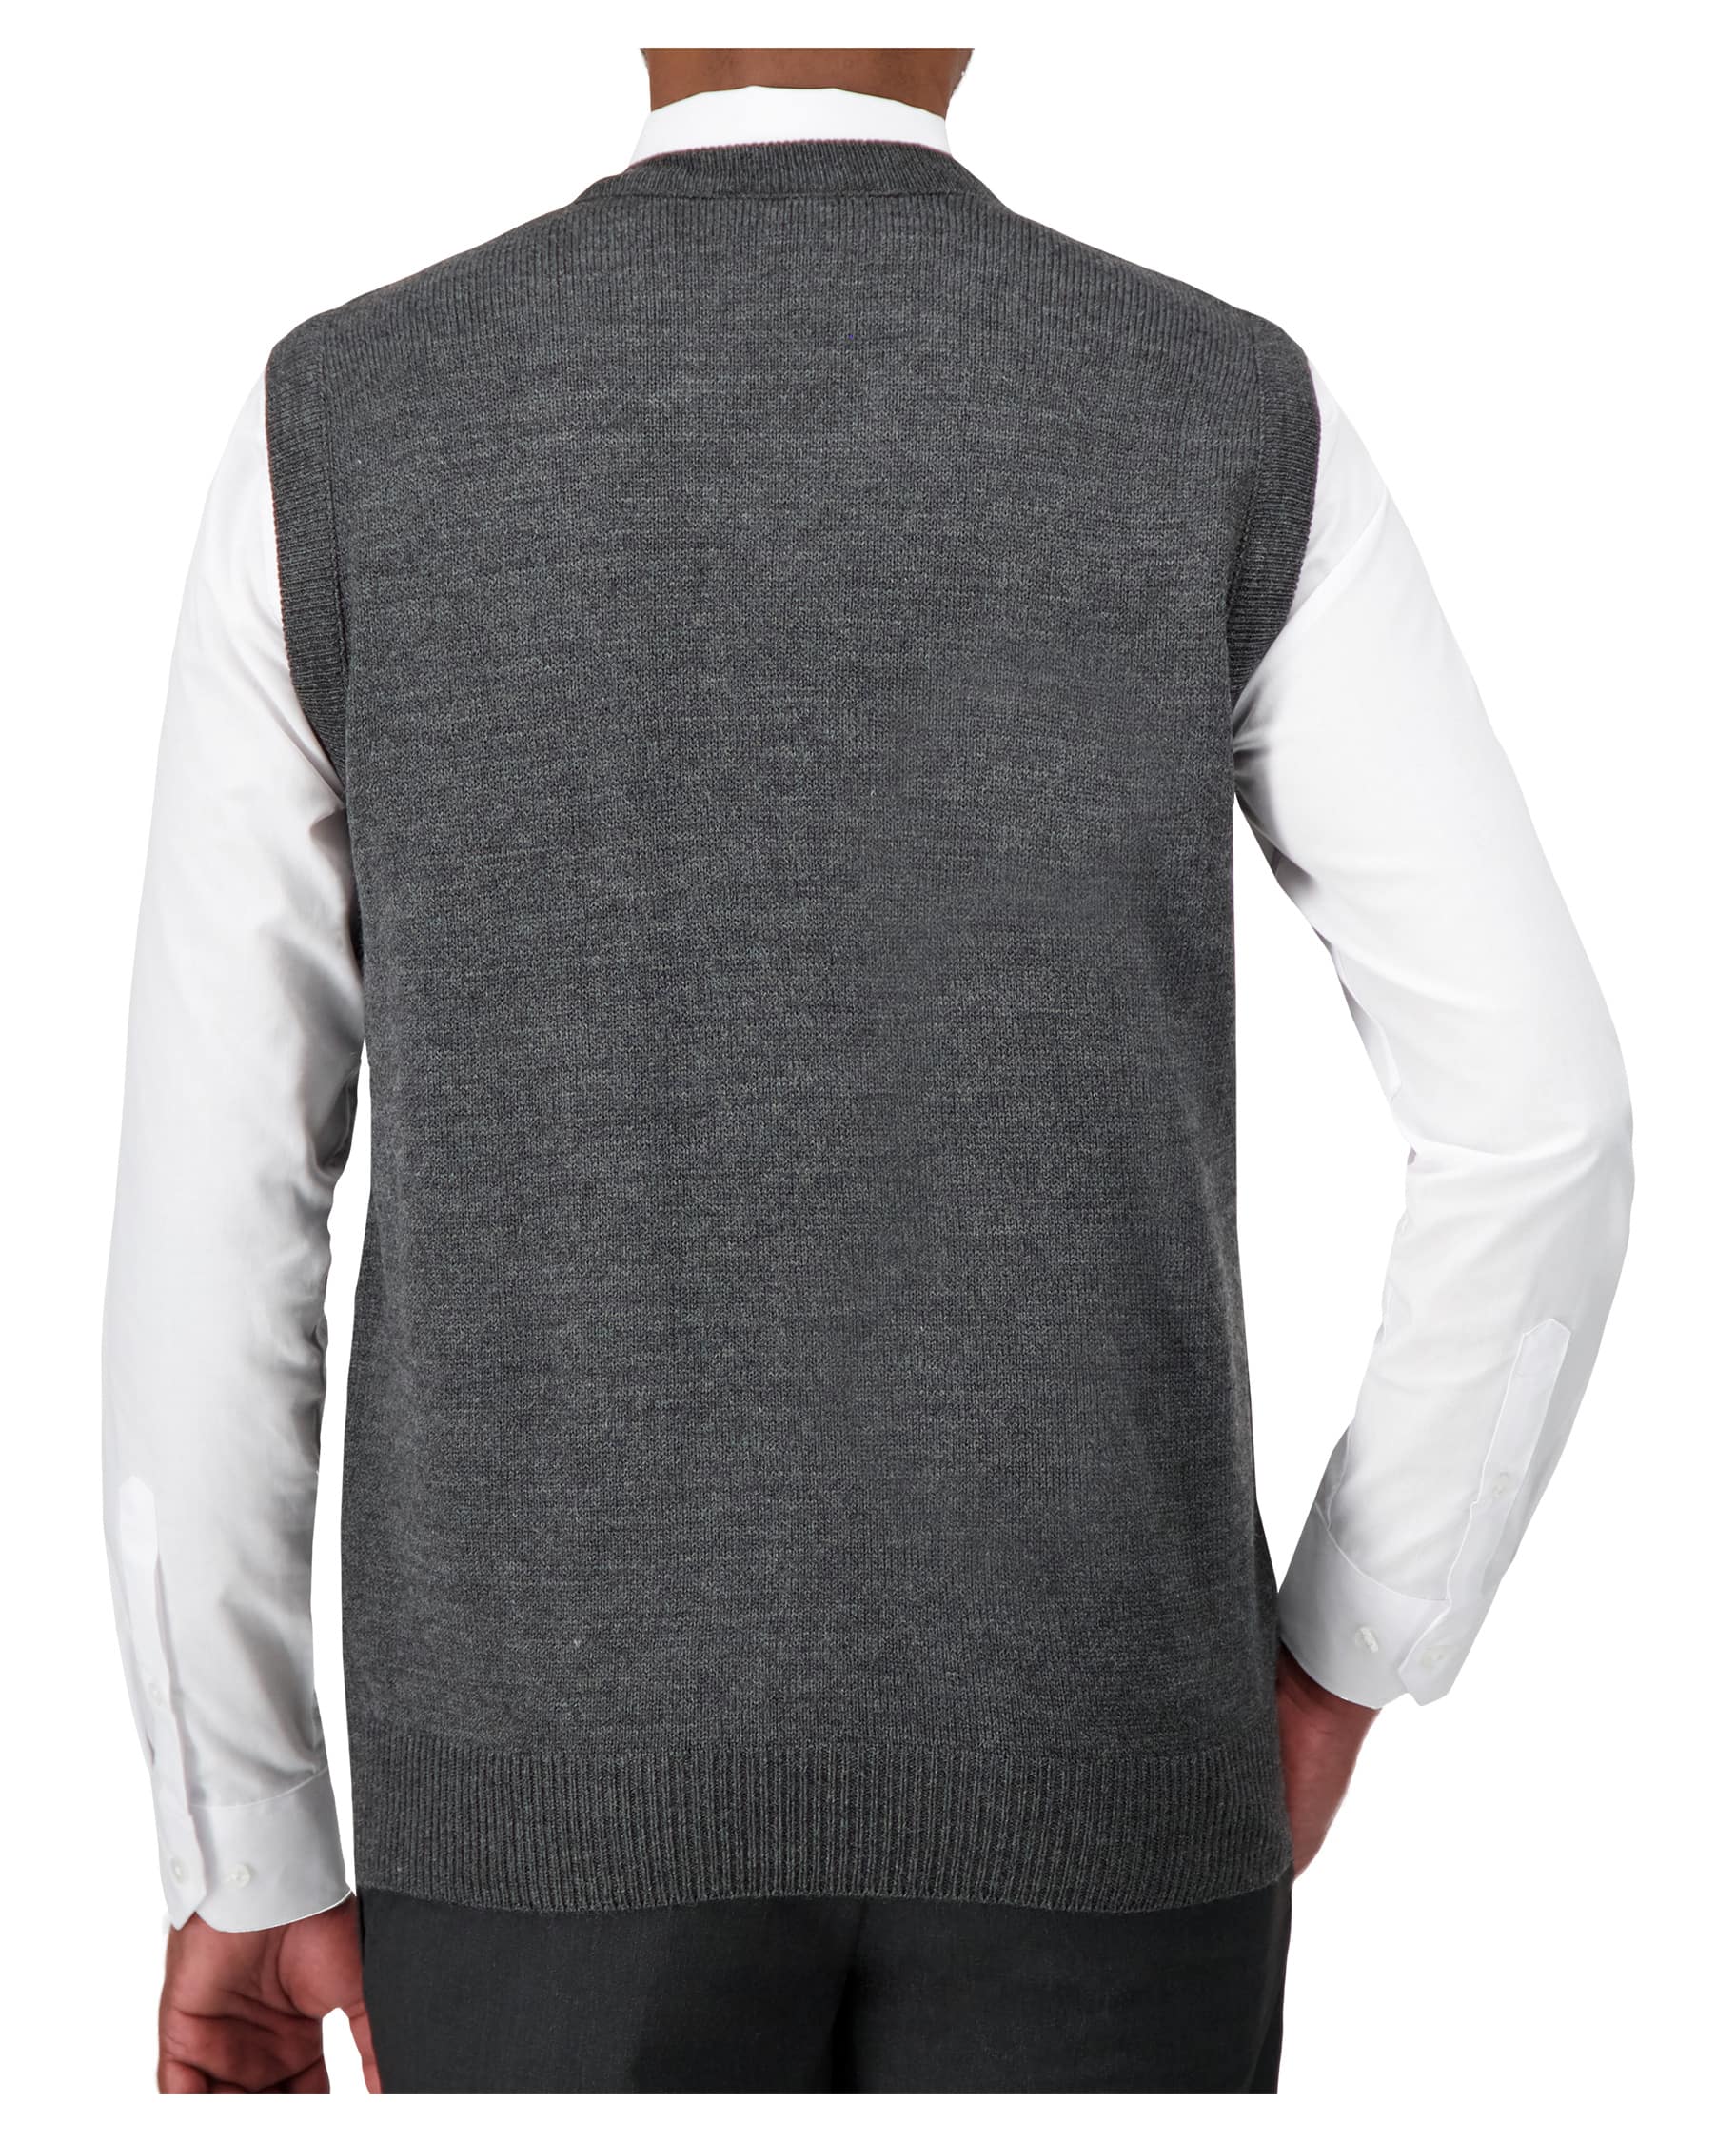 back of grey v-neck sweater vest